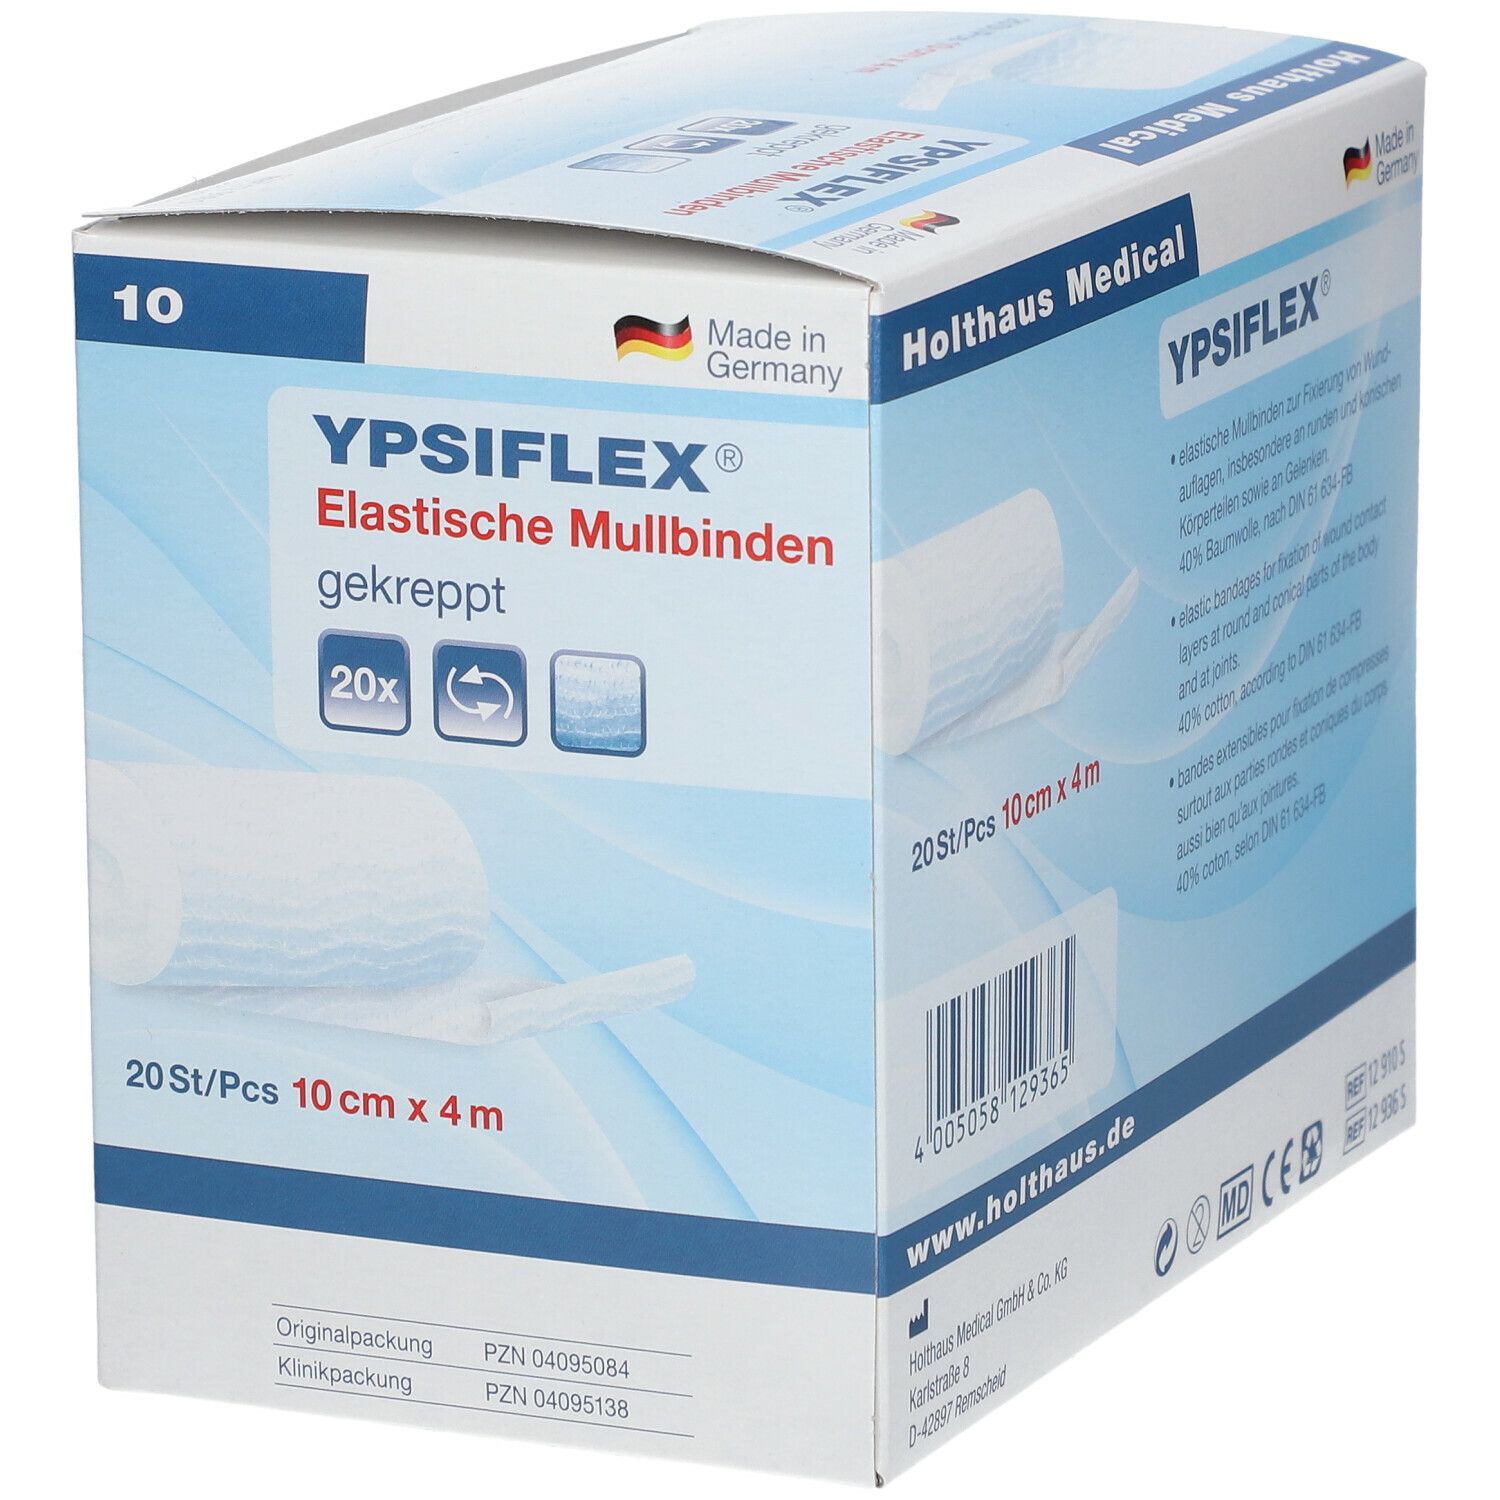 YPSIFLEX® Elastische Mullbinden 4 m x 10 cm